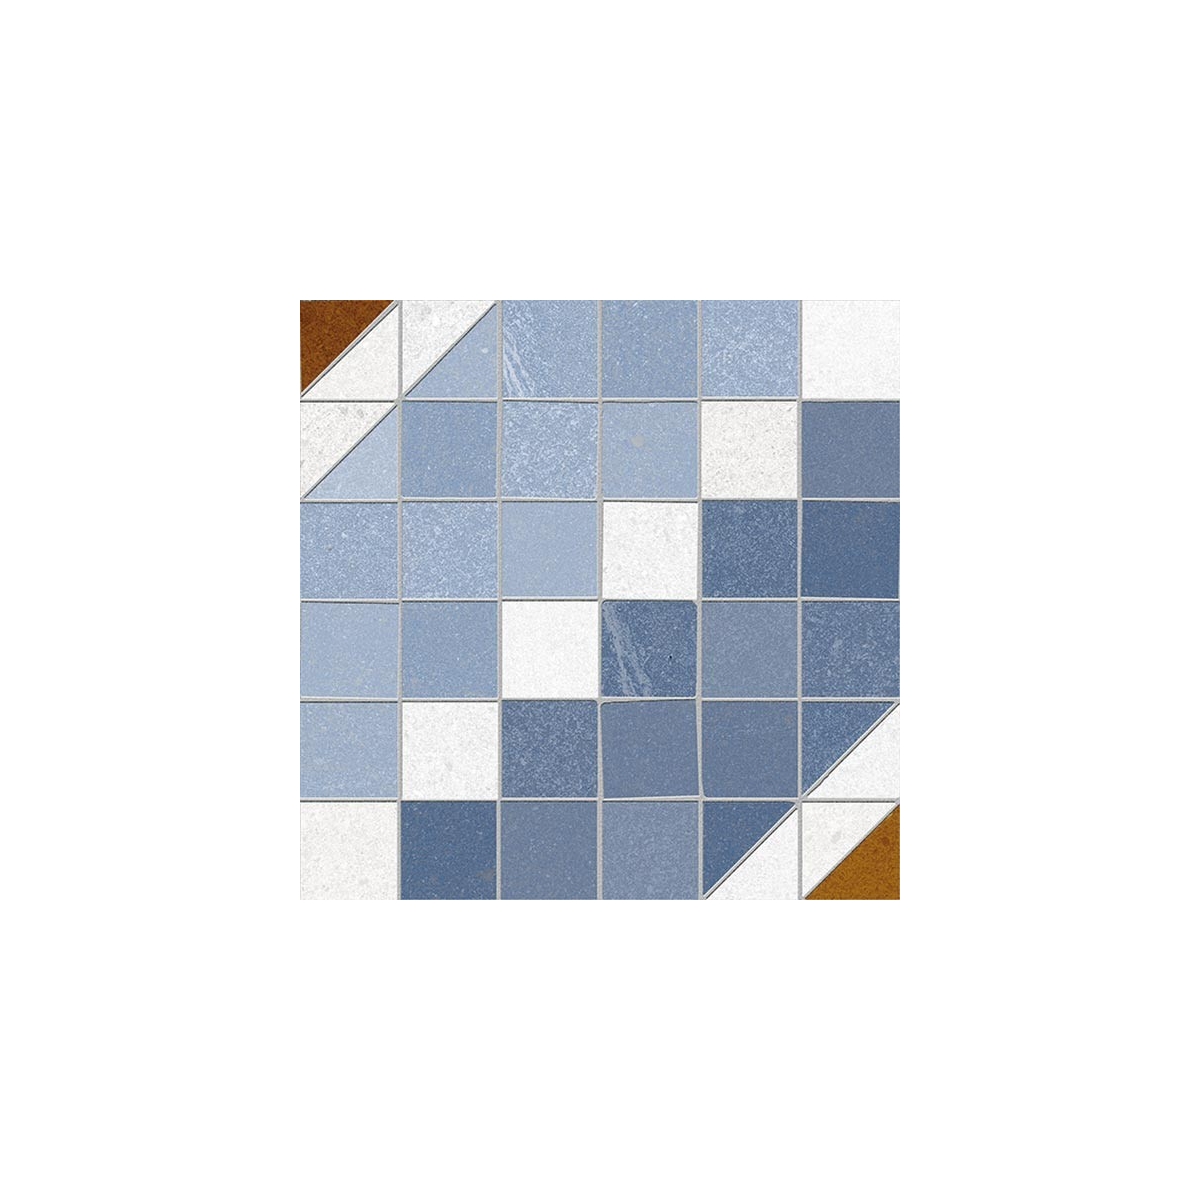 Marly Azul 20x20 (m2) - Pavimento hidráulico em grés porcelânico